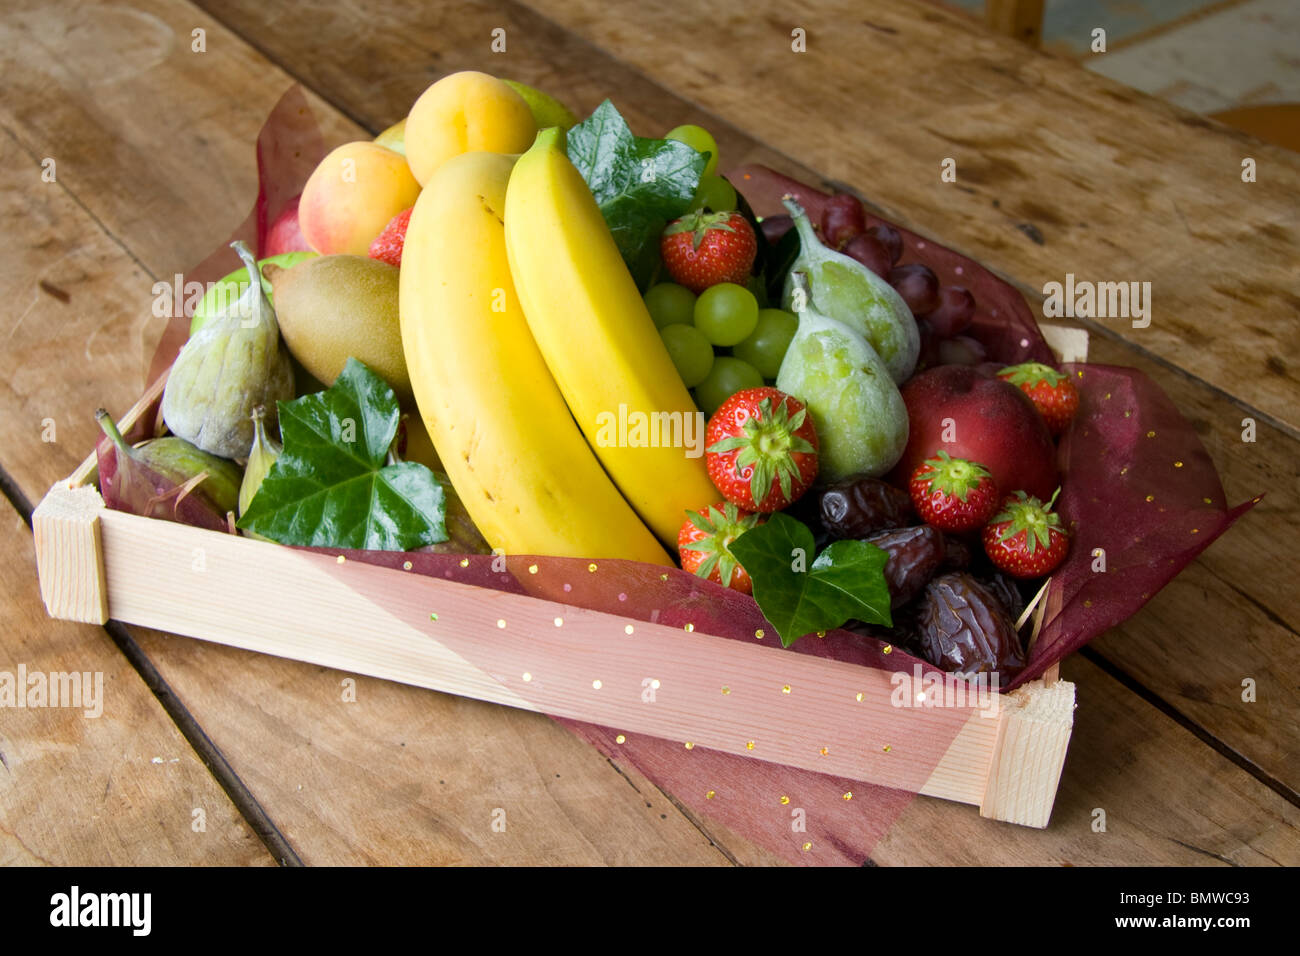 Une pile de fruits dans un punnett avec fig's fraise banane raisins kiwi Banque D'Images